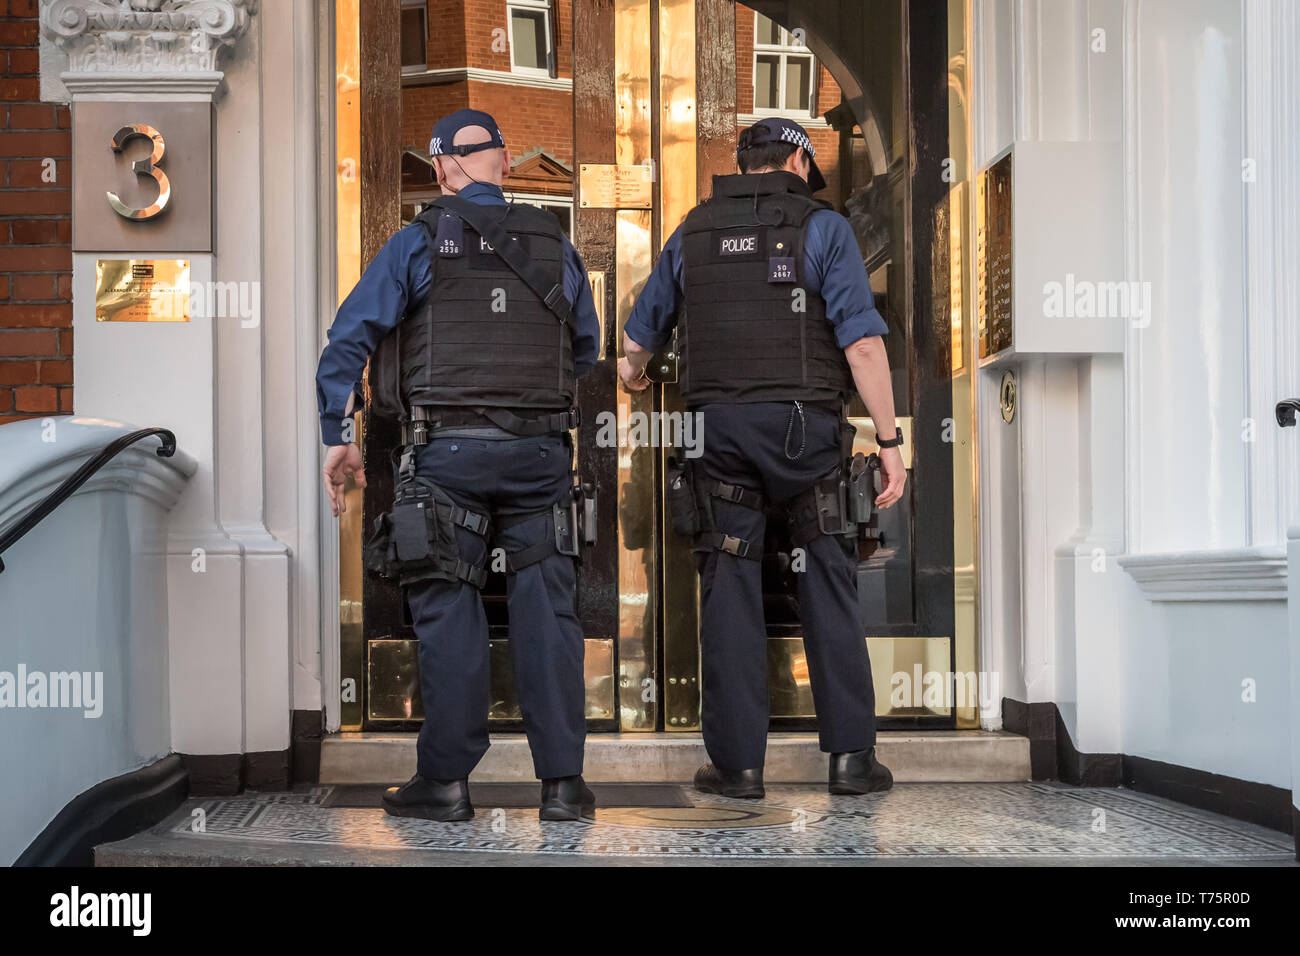 La police a rencontré sont vus entrer dans l'ambassade d'Equateur à Knightsbridge le jour de Julian Assange's l'expulsion et l'arrestation. Londres, Royaume-Uni. Banque D'Images